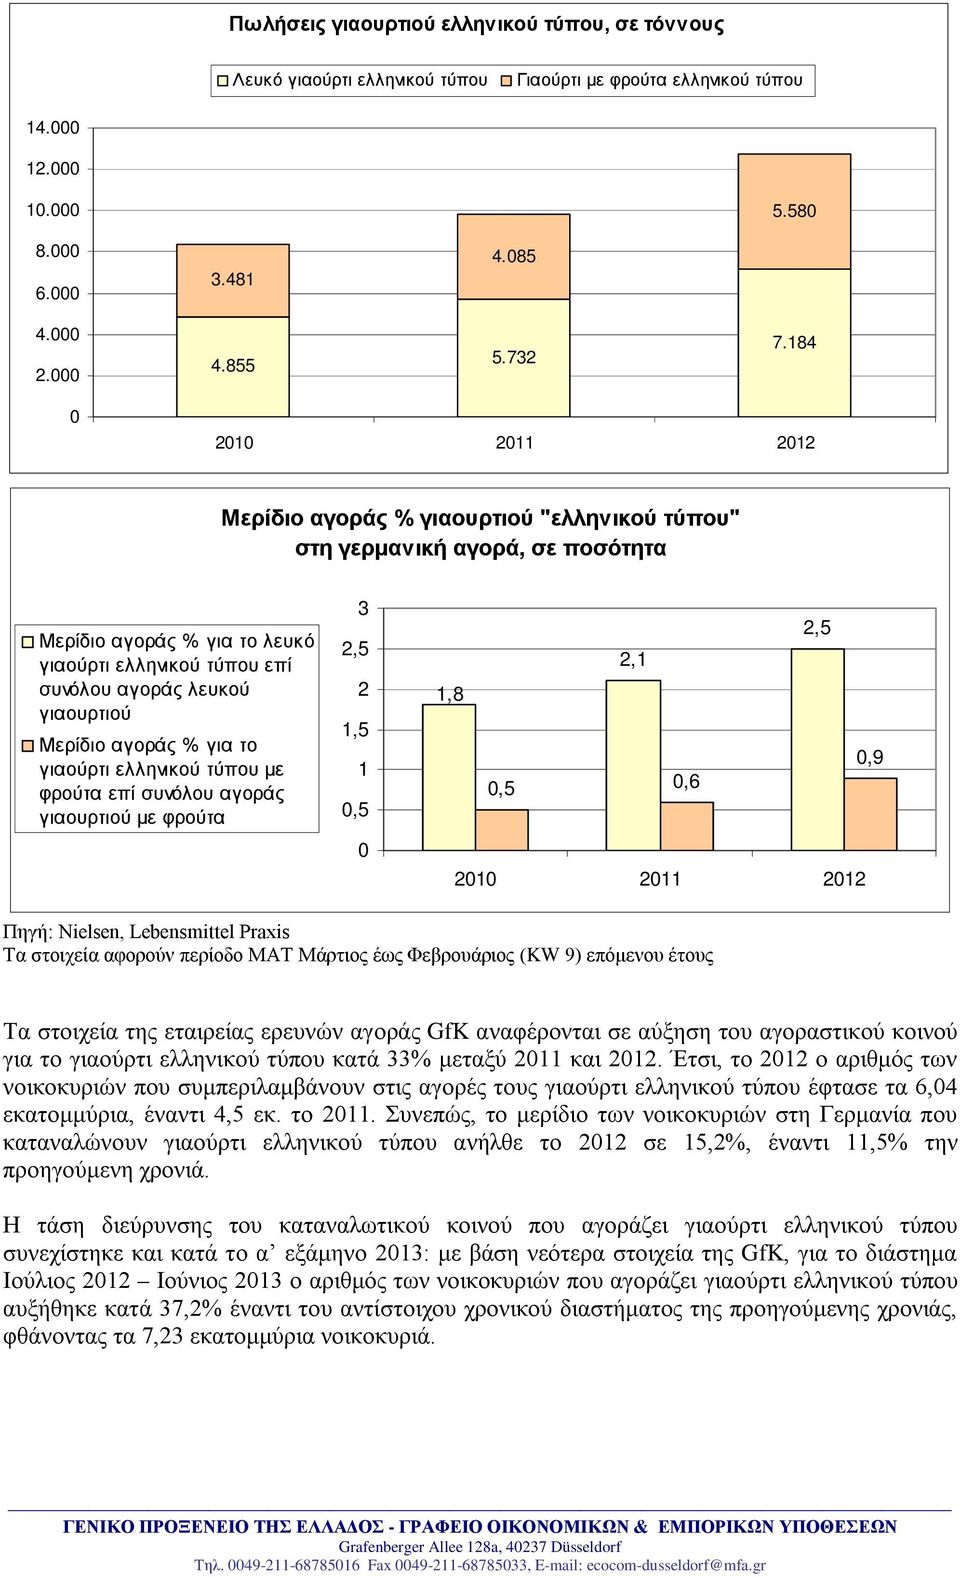 αγοράς % για το γιαούρτι ελληνικού τύπου με φρούτα επί συνόλου αγοράς γιαουρτιού με φρούτα 3 2,5 2 1,5 1 0,5 0 2,5 2,1 1,8 0,9 0,5 0,6 2010 2011 2012 Πηγή: Nielsen, Lebensmittel Praxis Τα στοιχεία